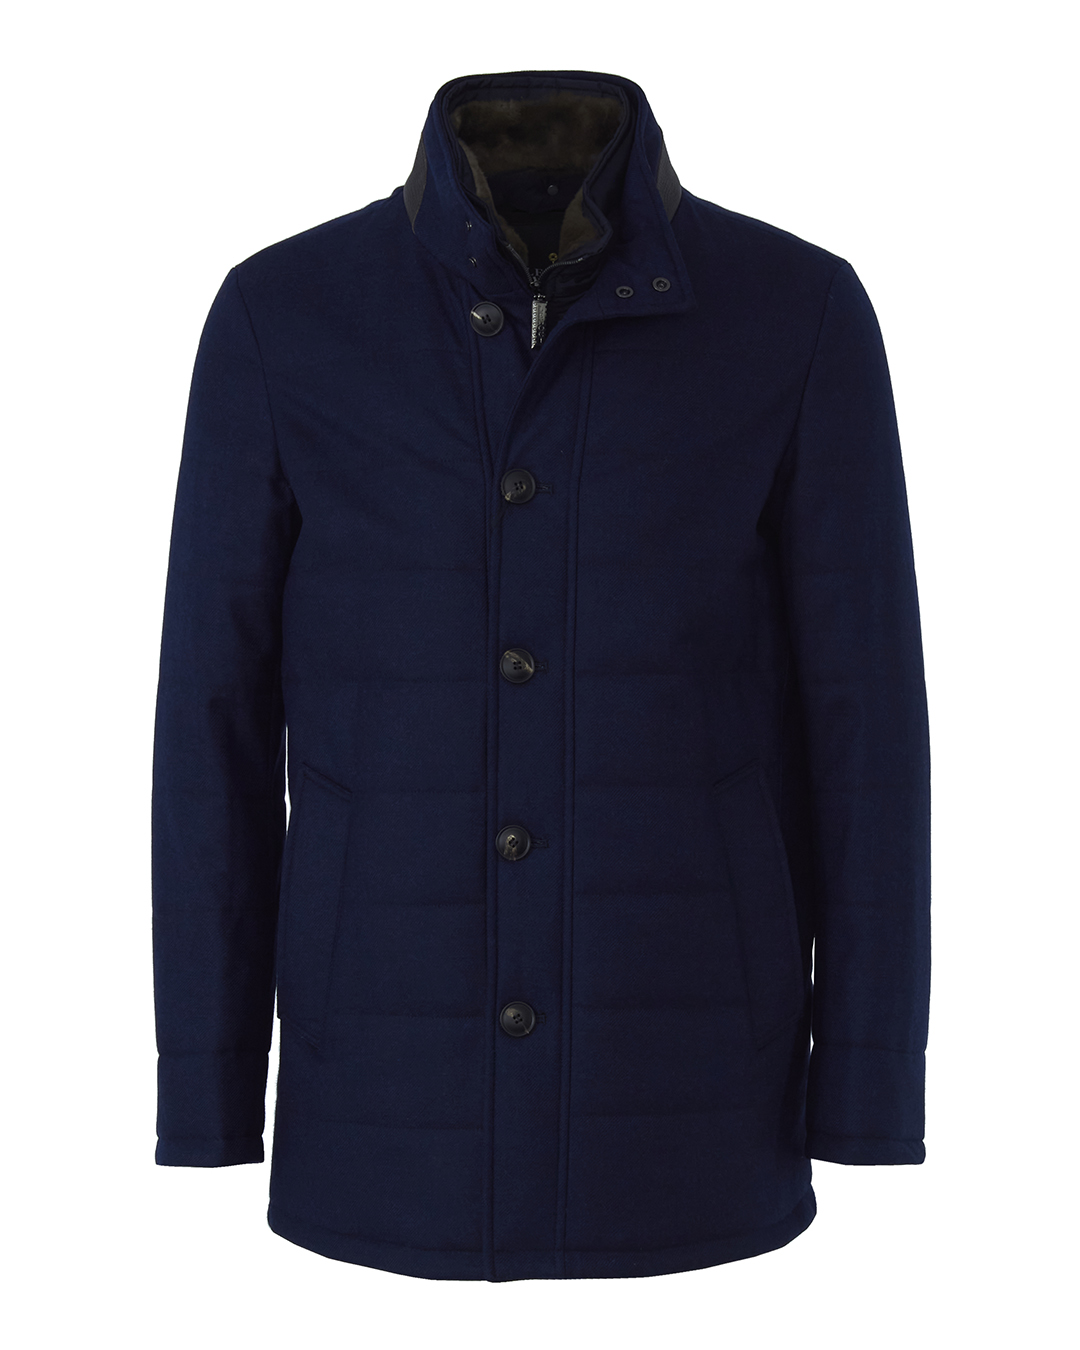 Пальто мужское LENOCI M25L80-203 синее 54